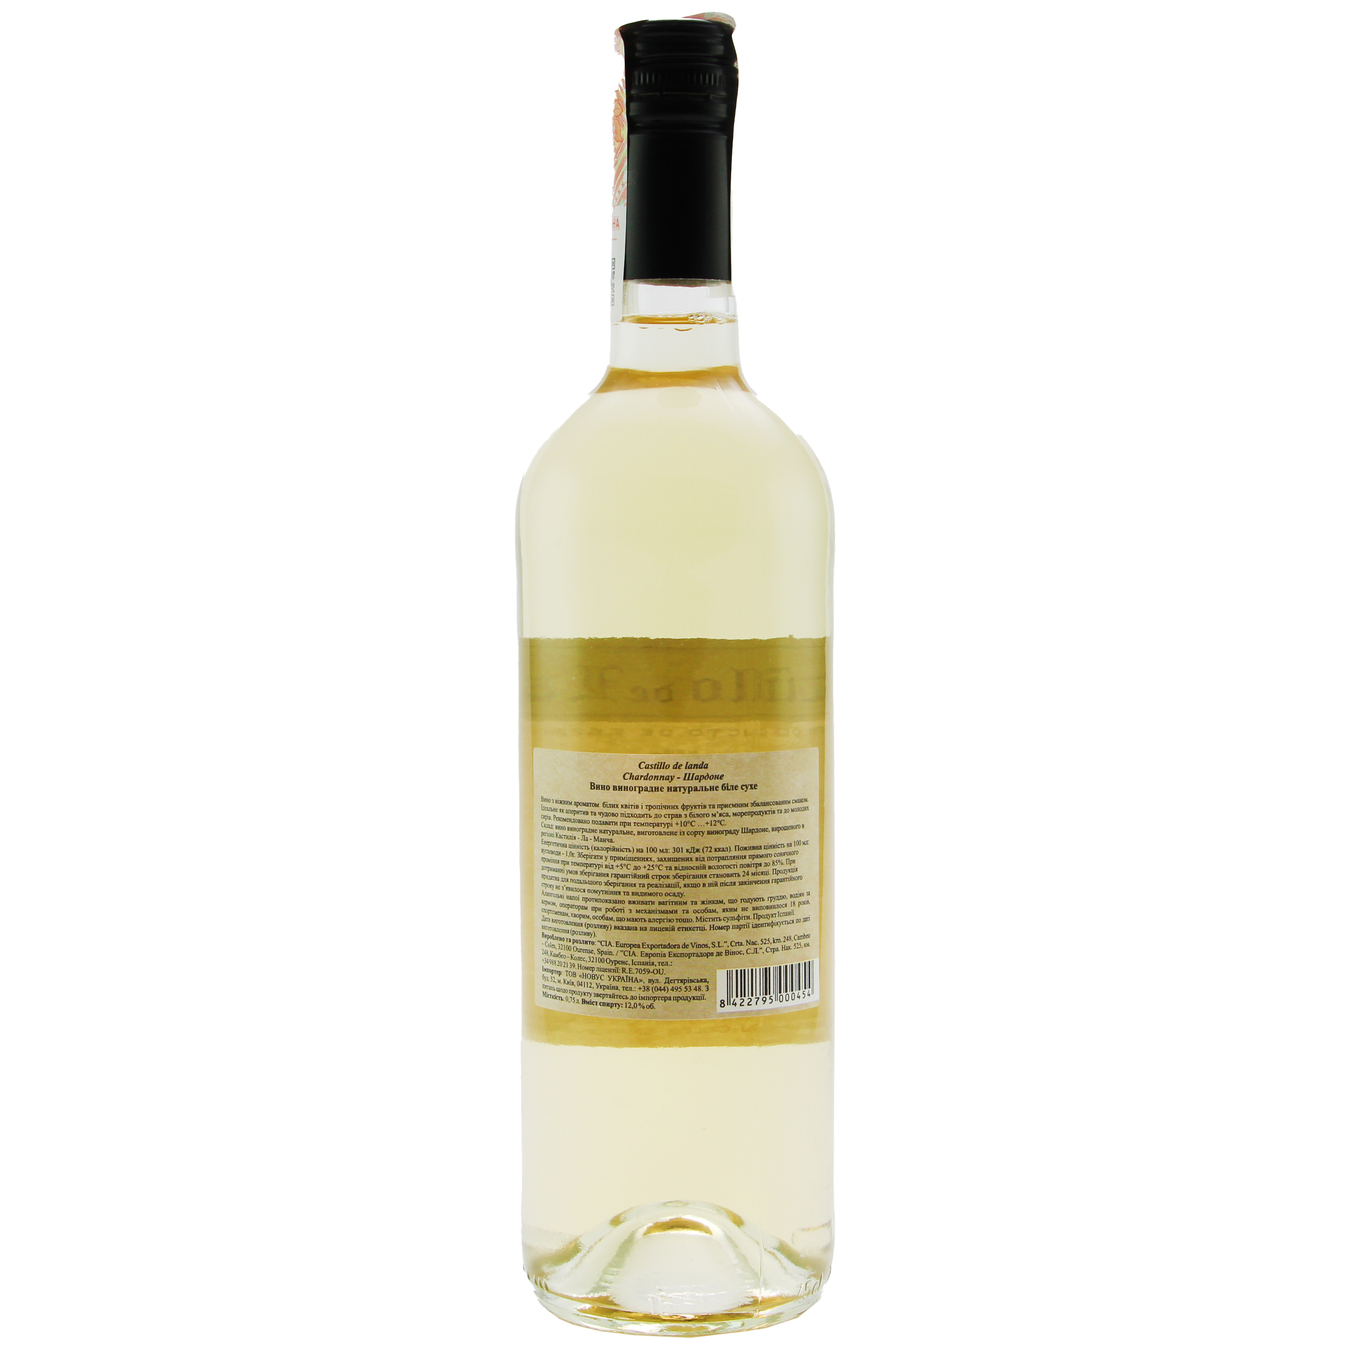 Вино Castillo de landa Chardonnay белое сухое 12% 0,75л 2